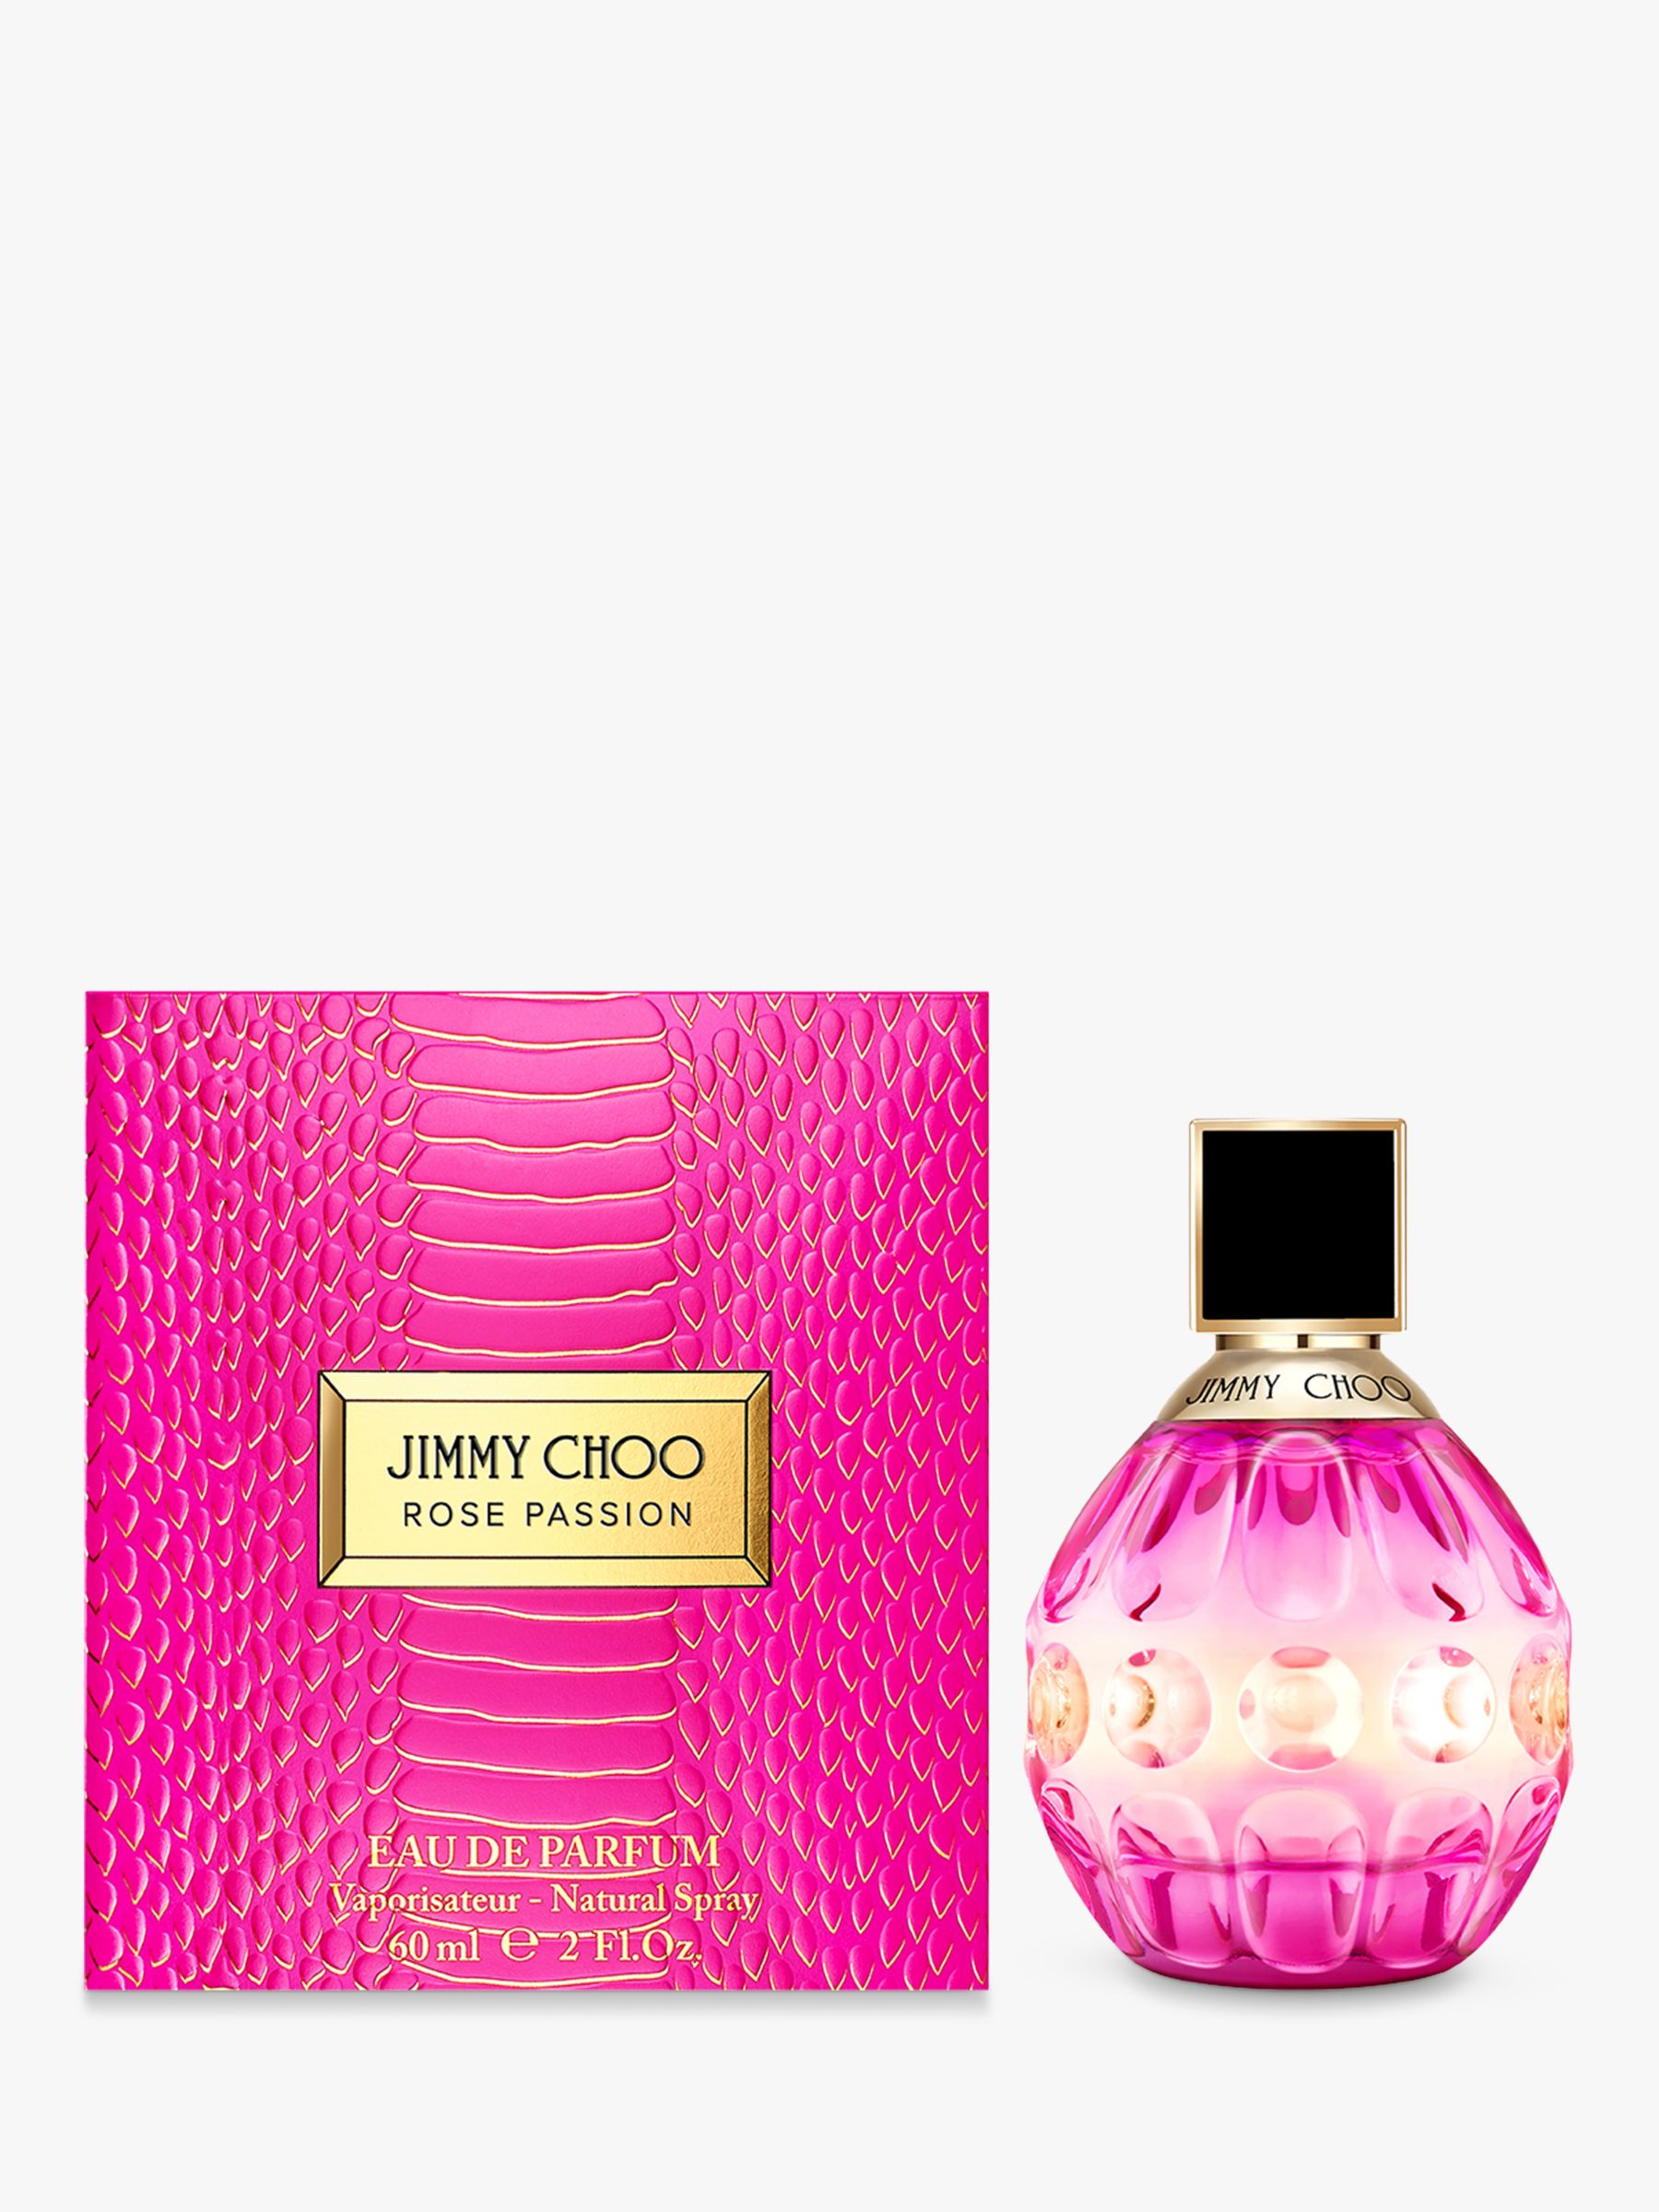 Jimmy Choo Rose Passion Eau de Parfum, 60ml 2